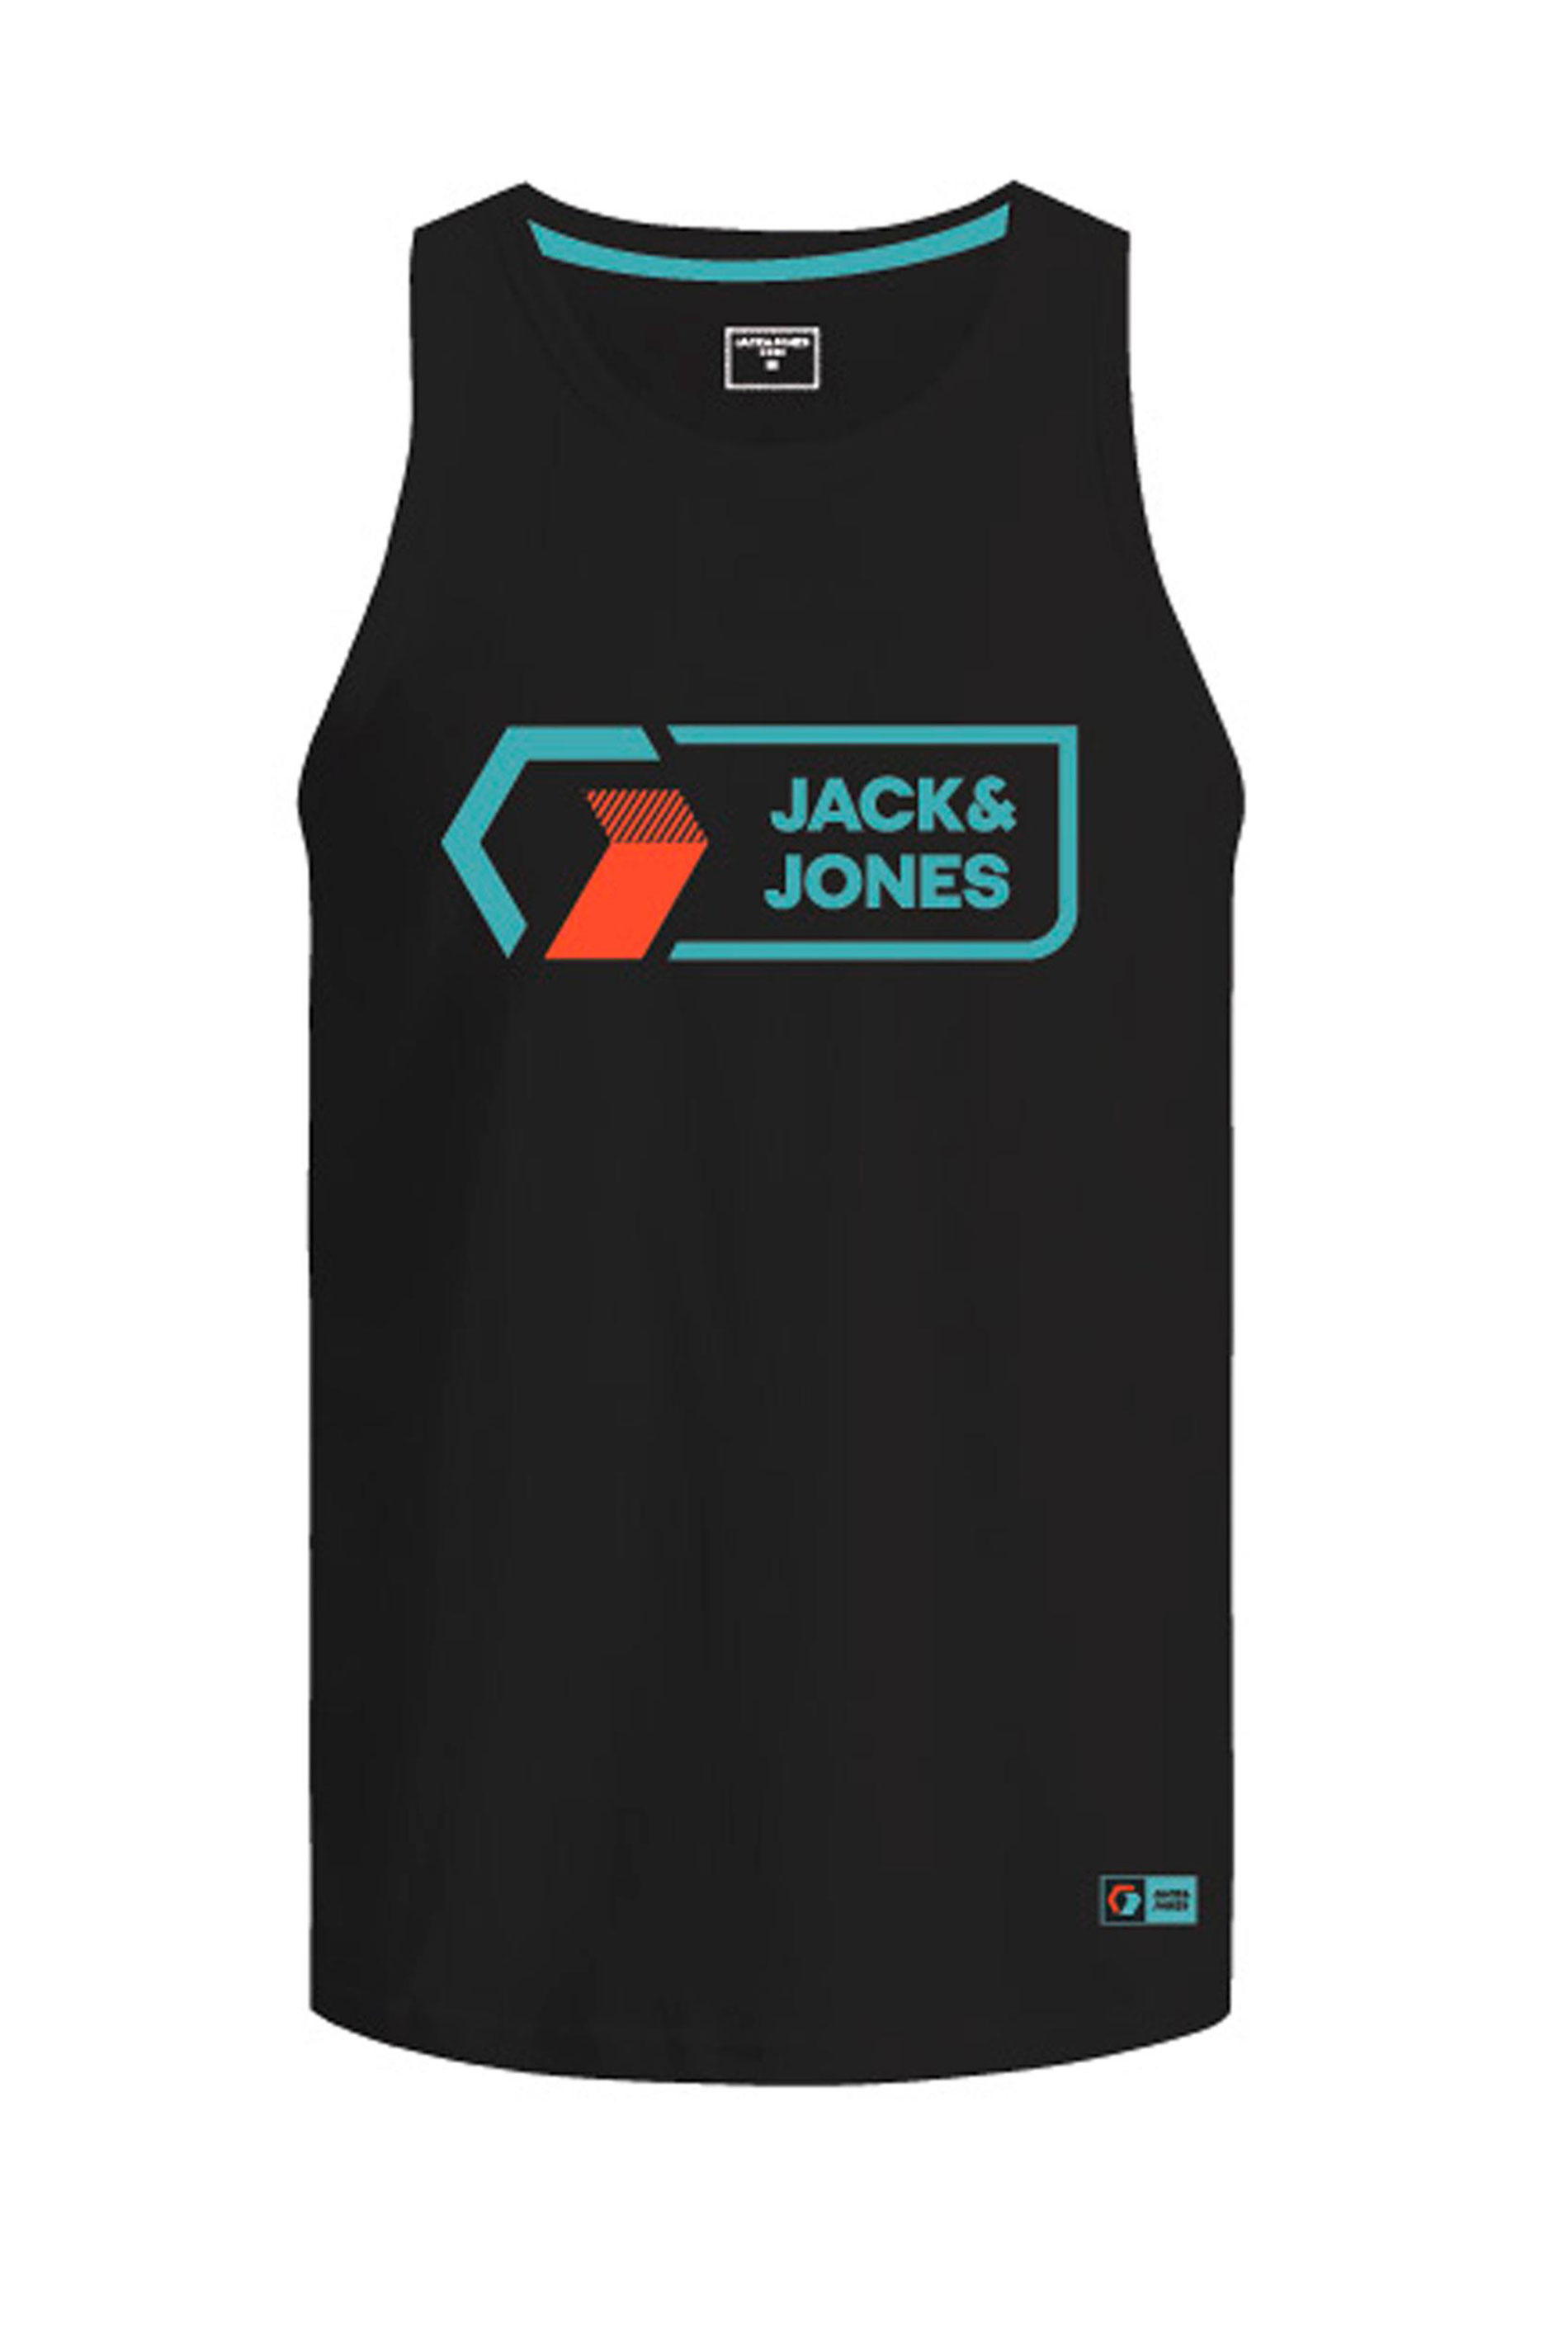 JACK & JONES Big & Tall Black Logo Vest_F.jpg